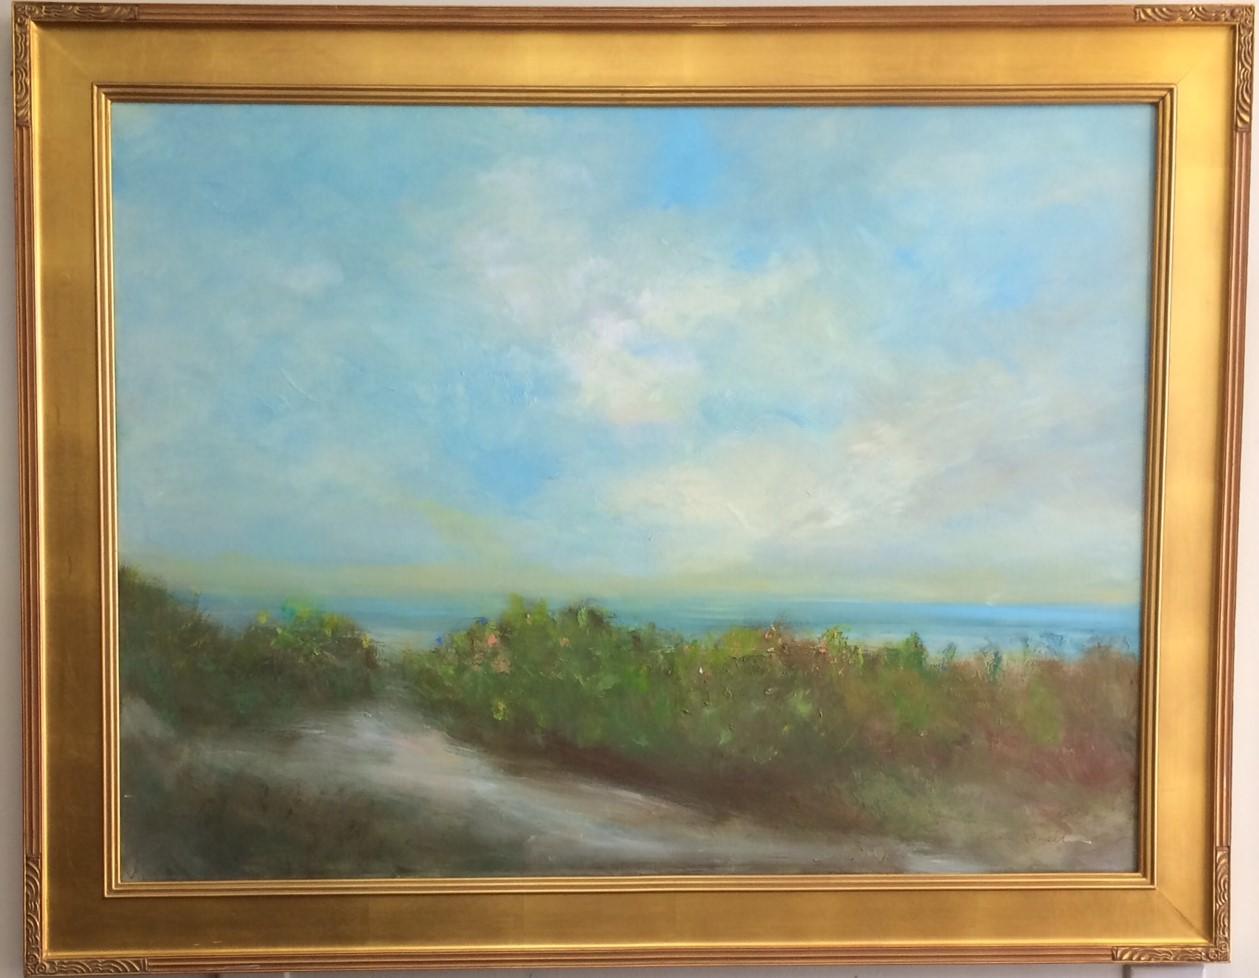 Karen Ponelli Landscape Painting - Path to the Sea, original 30x40 contemporary landscape